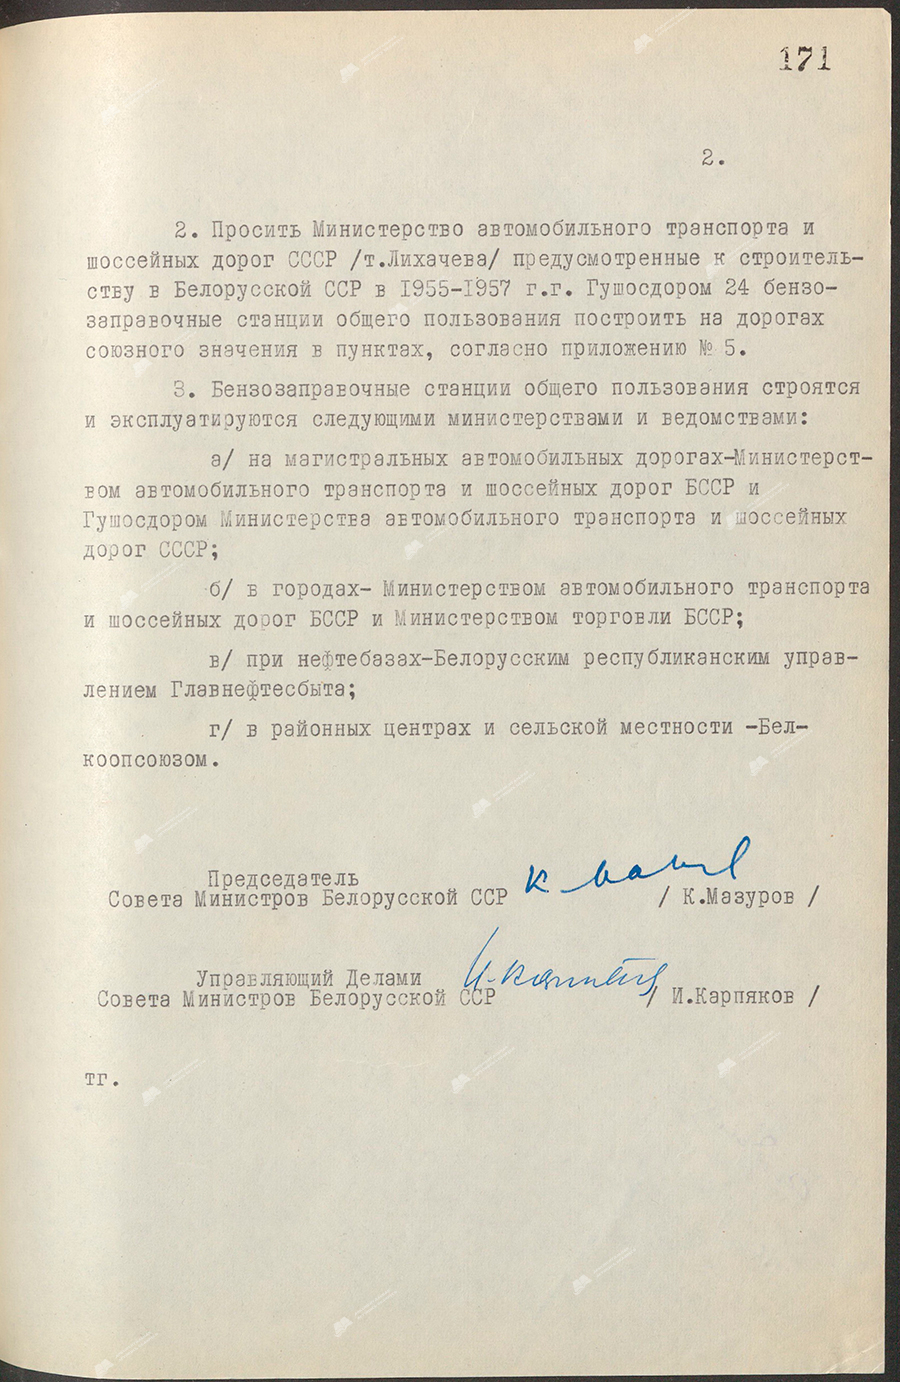 Beschluss Nr. 1021 des Ministerrats der Weißrussischen SSR «Über den Bau öffentlicher Gastankstellen in der Republik»-стр. 1